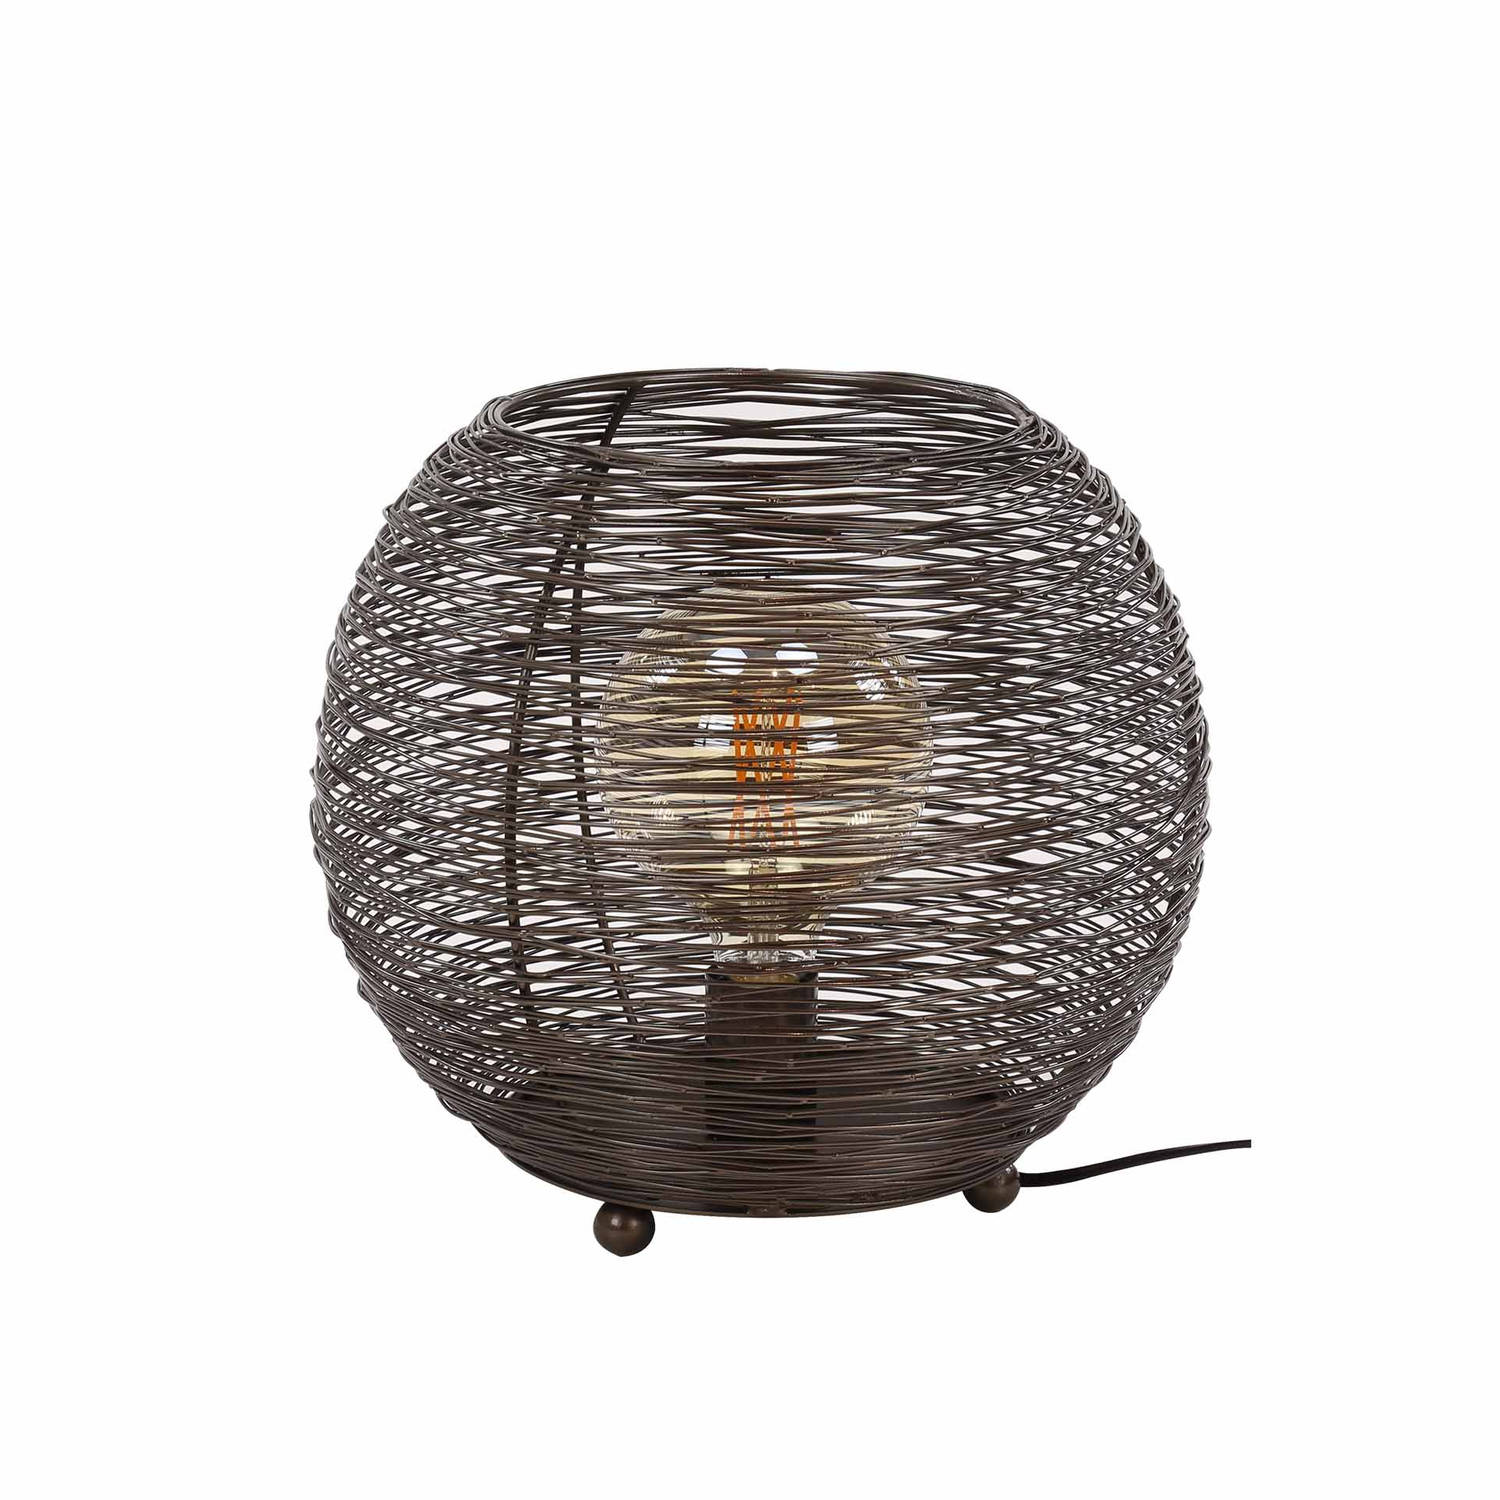 Giga Meubel Gm Tafellamp 35cm - Zwart Nikkel - Metaal - Lamp Web